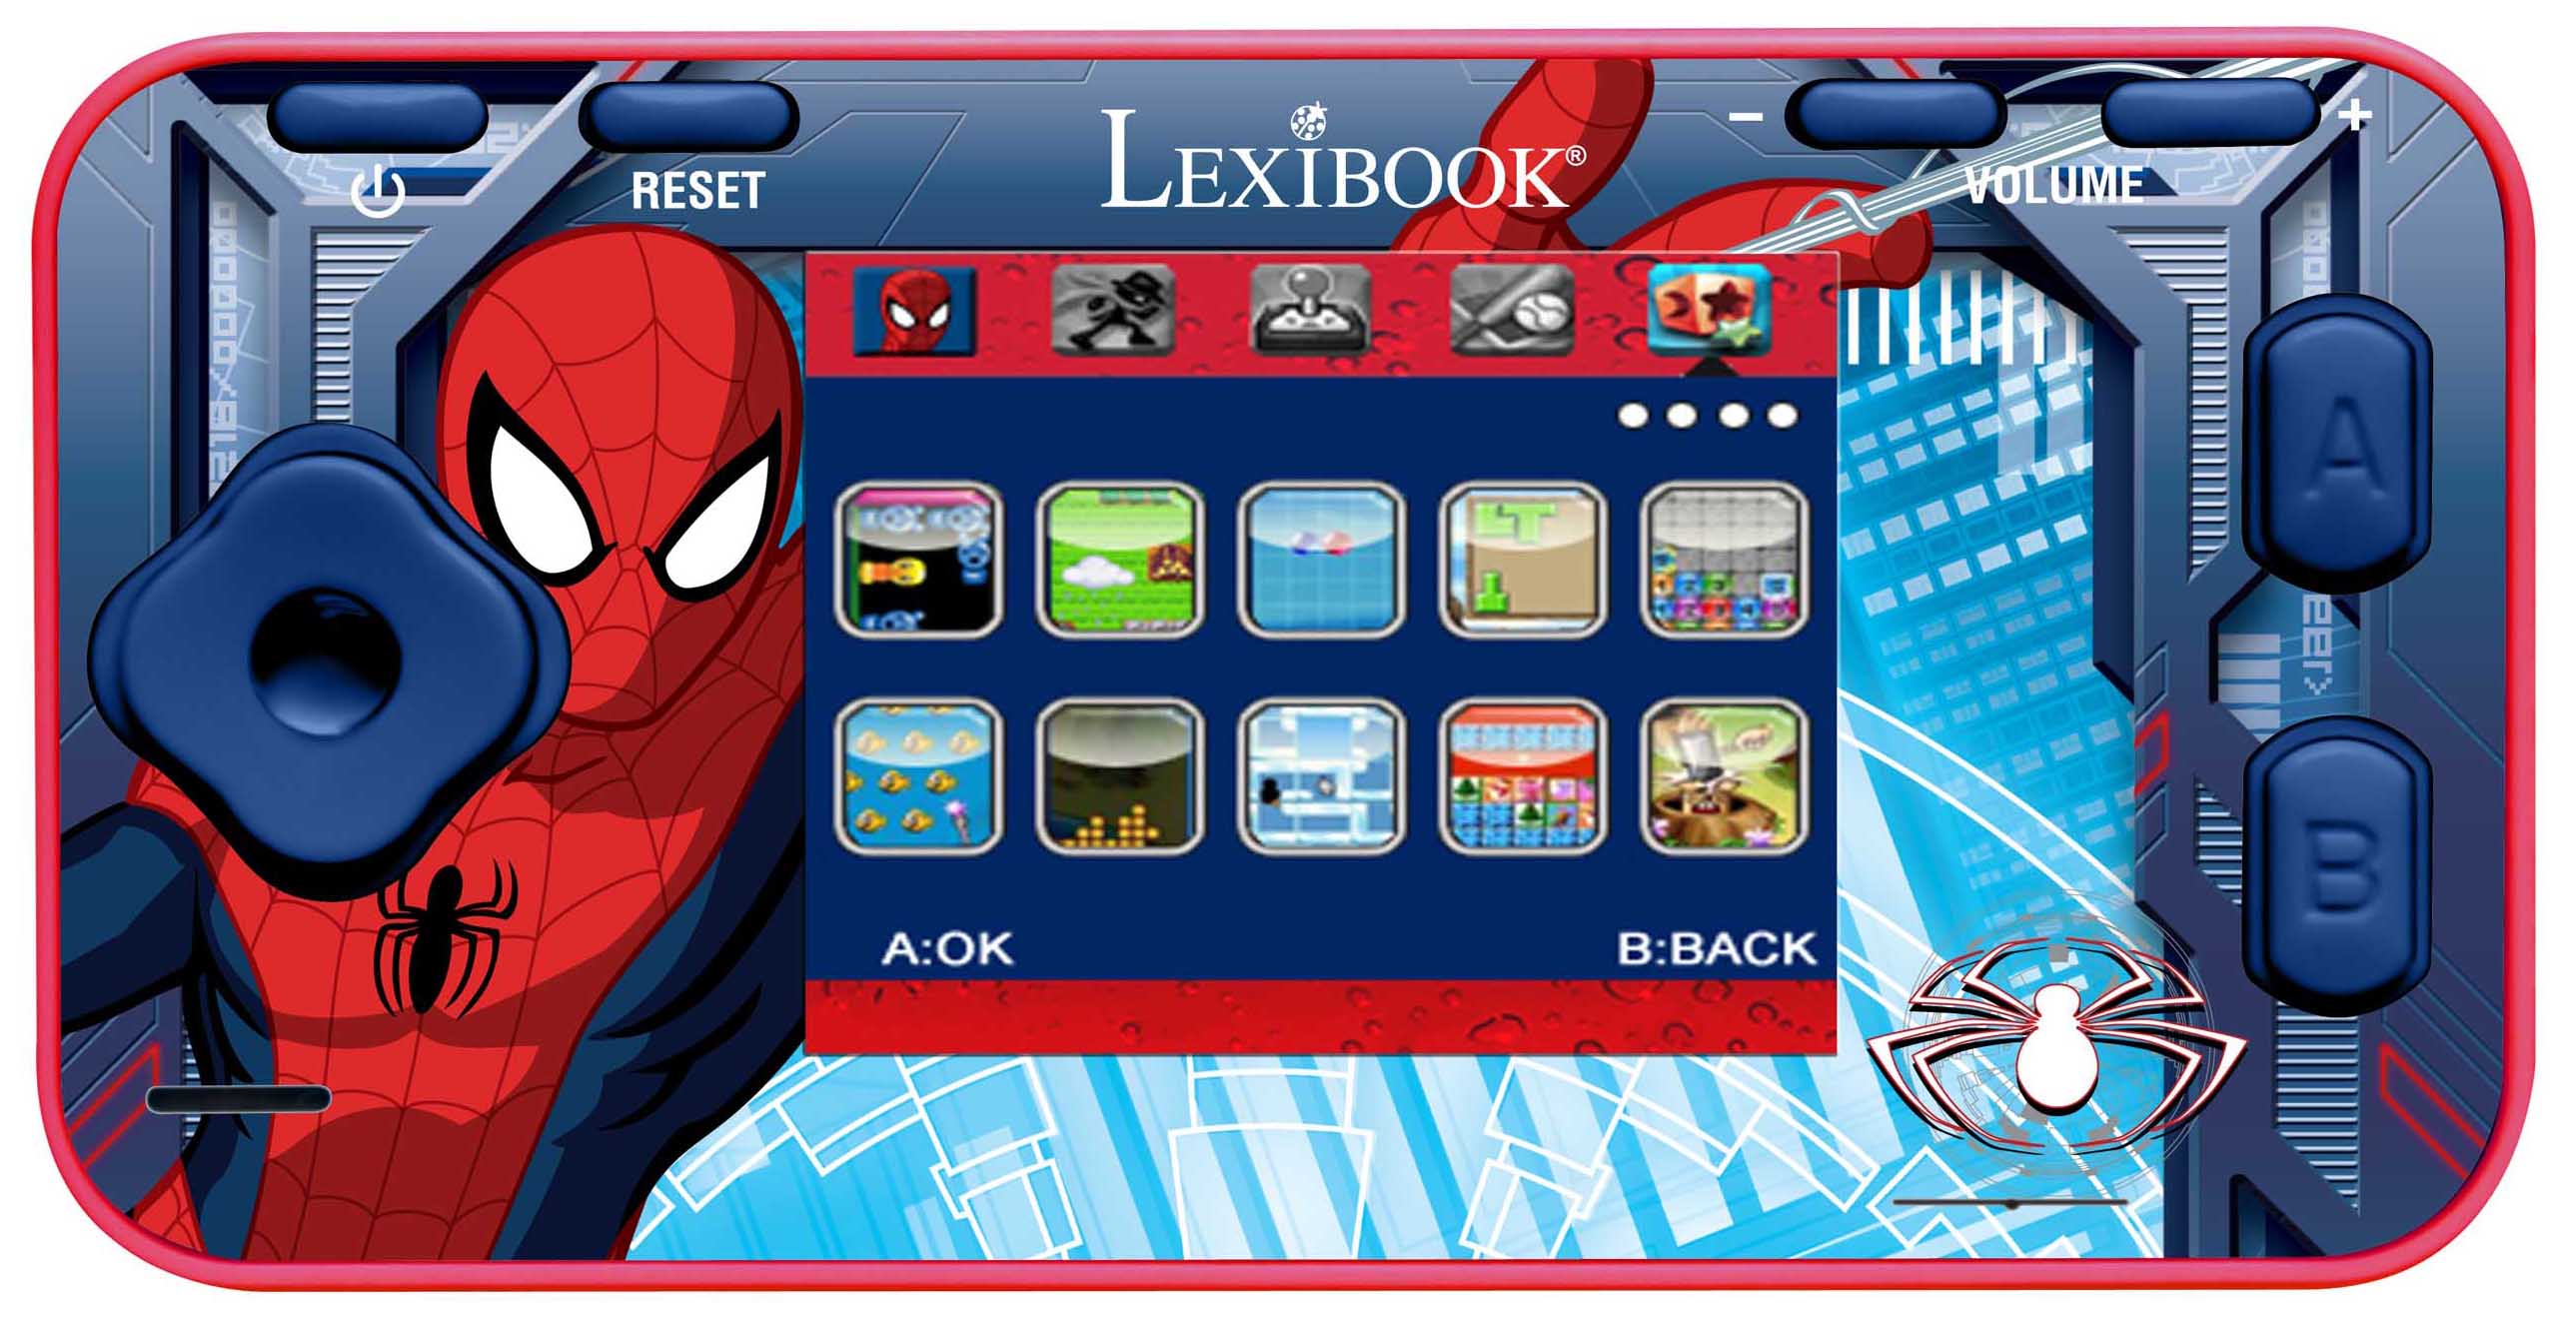 Tablette spider-man lexibook